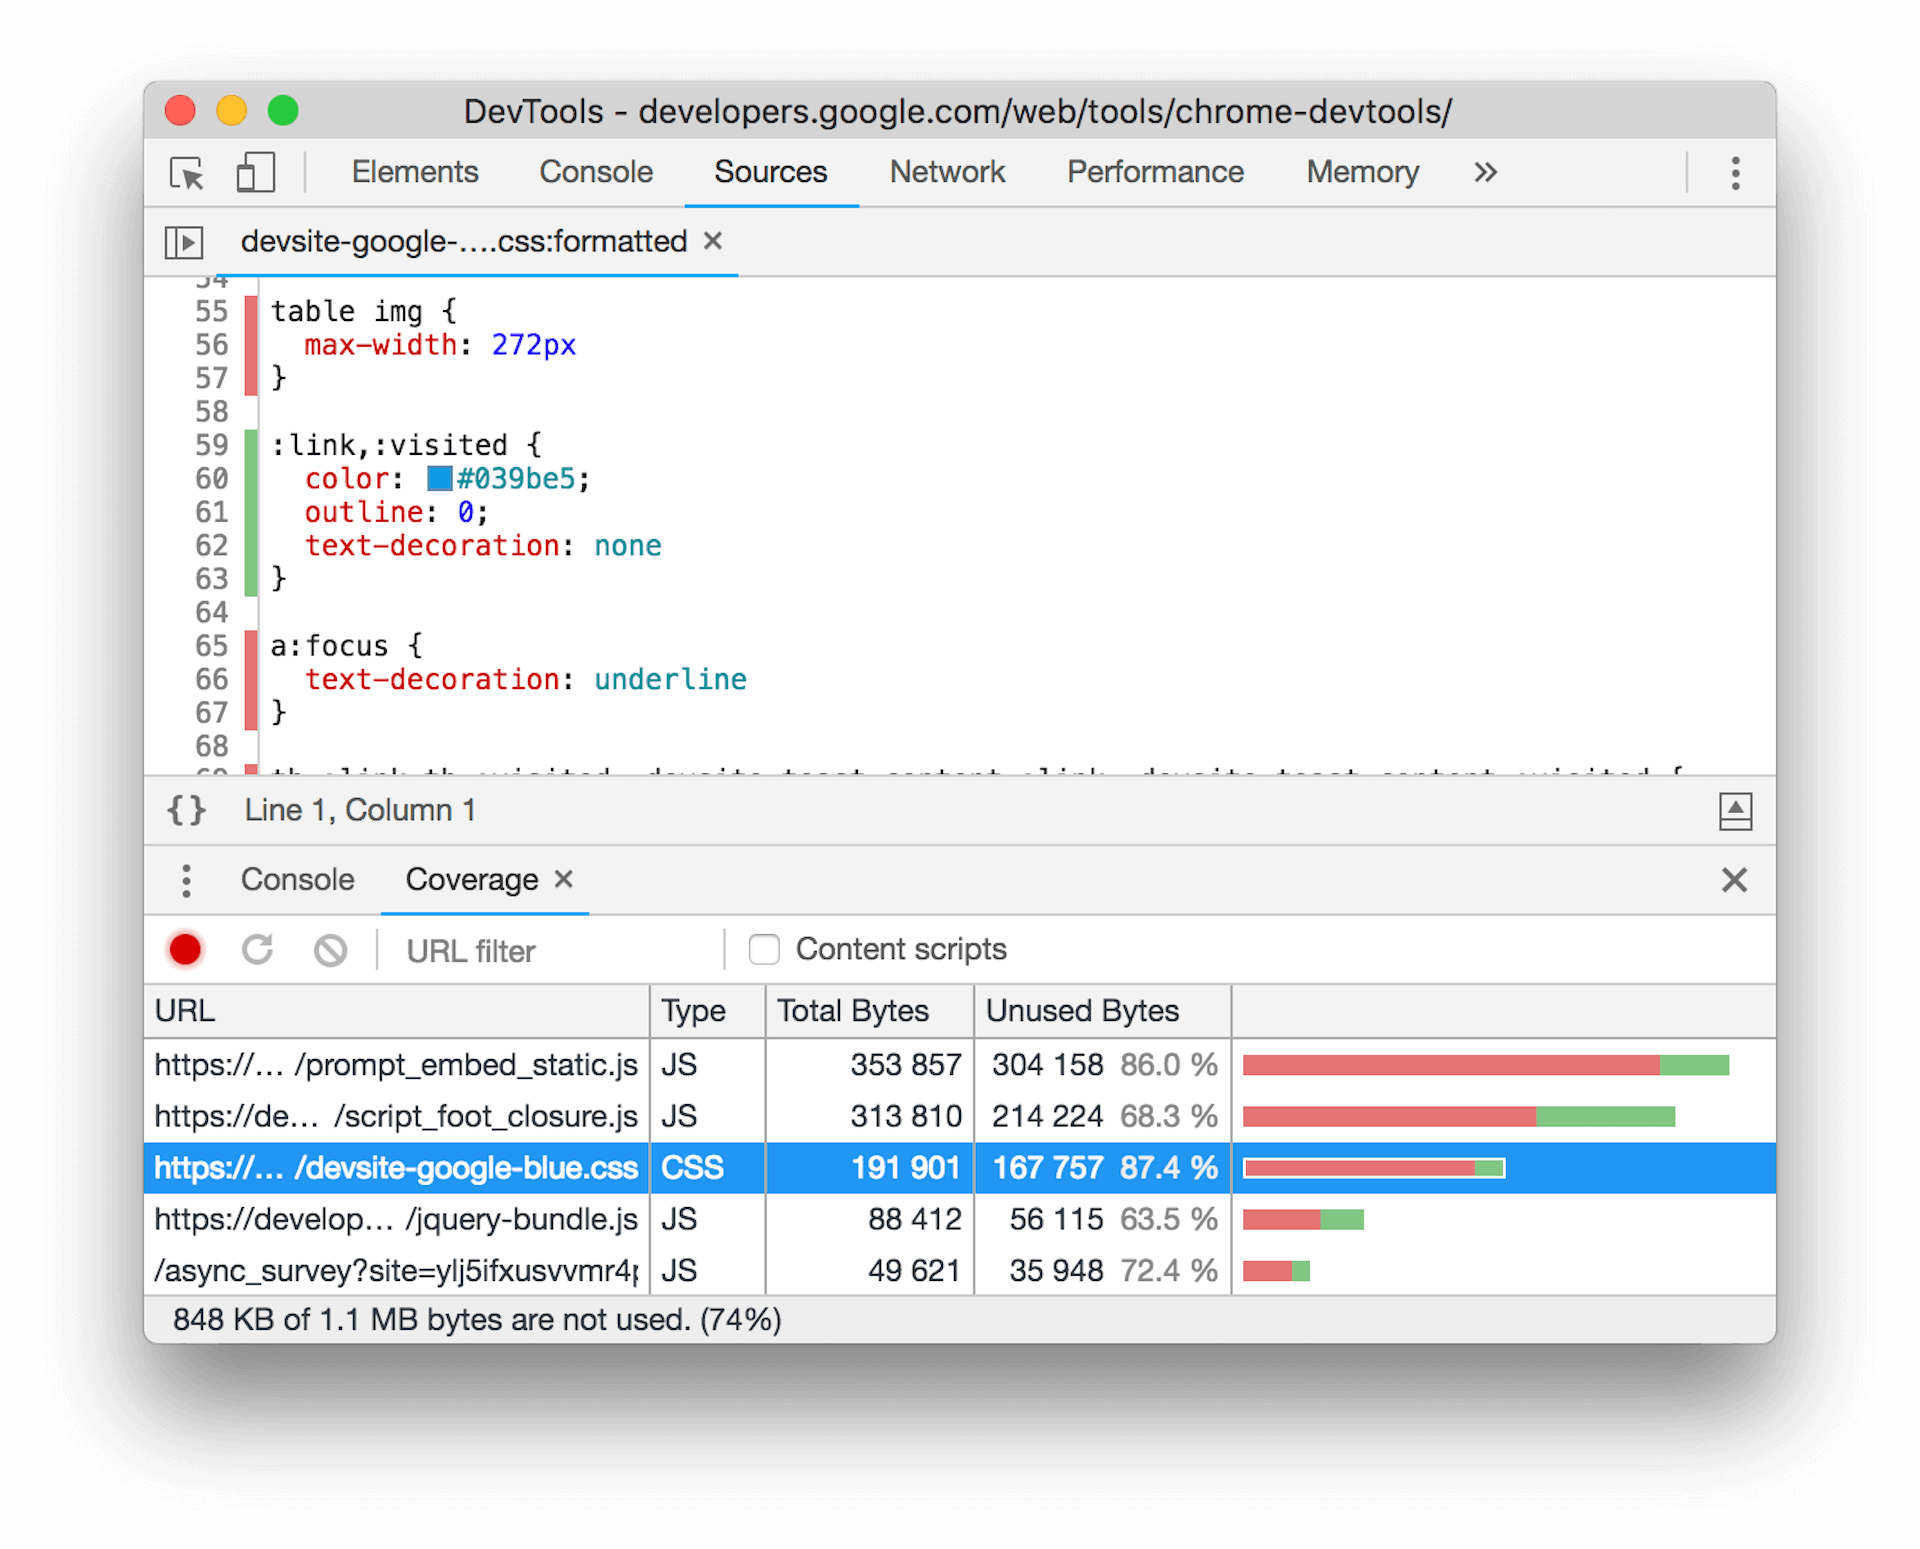 Скриншот инструмента покрытия в Chrome DevTools. В нижней панели выбран файл CSS, показывающий значительный объем CSS, не используемый текущим макетом страницы.